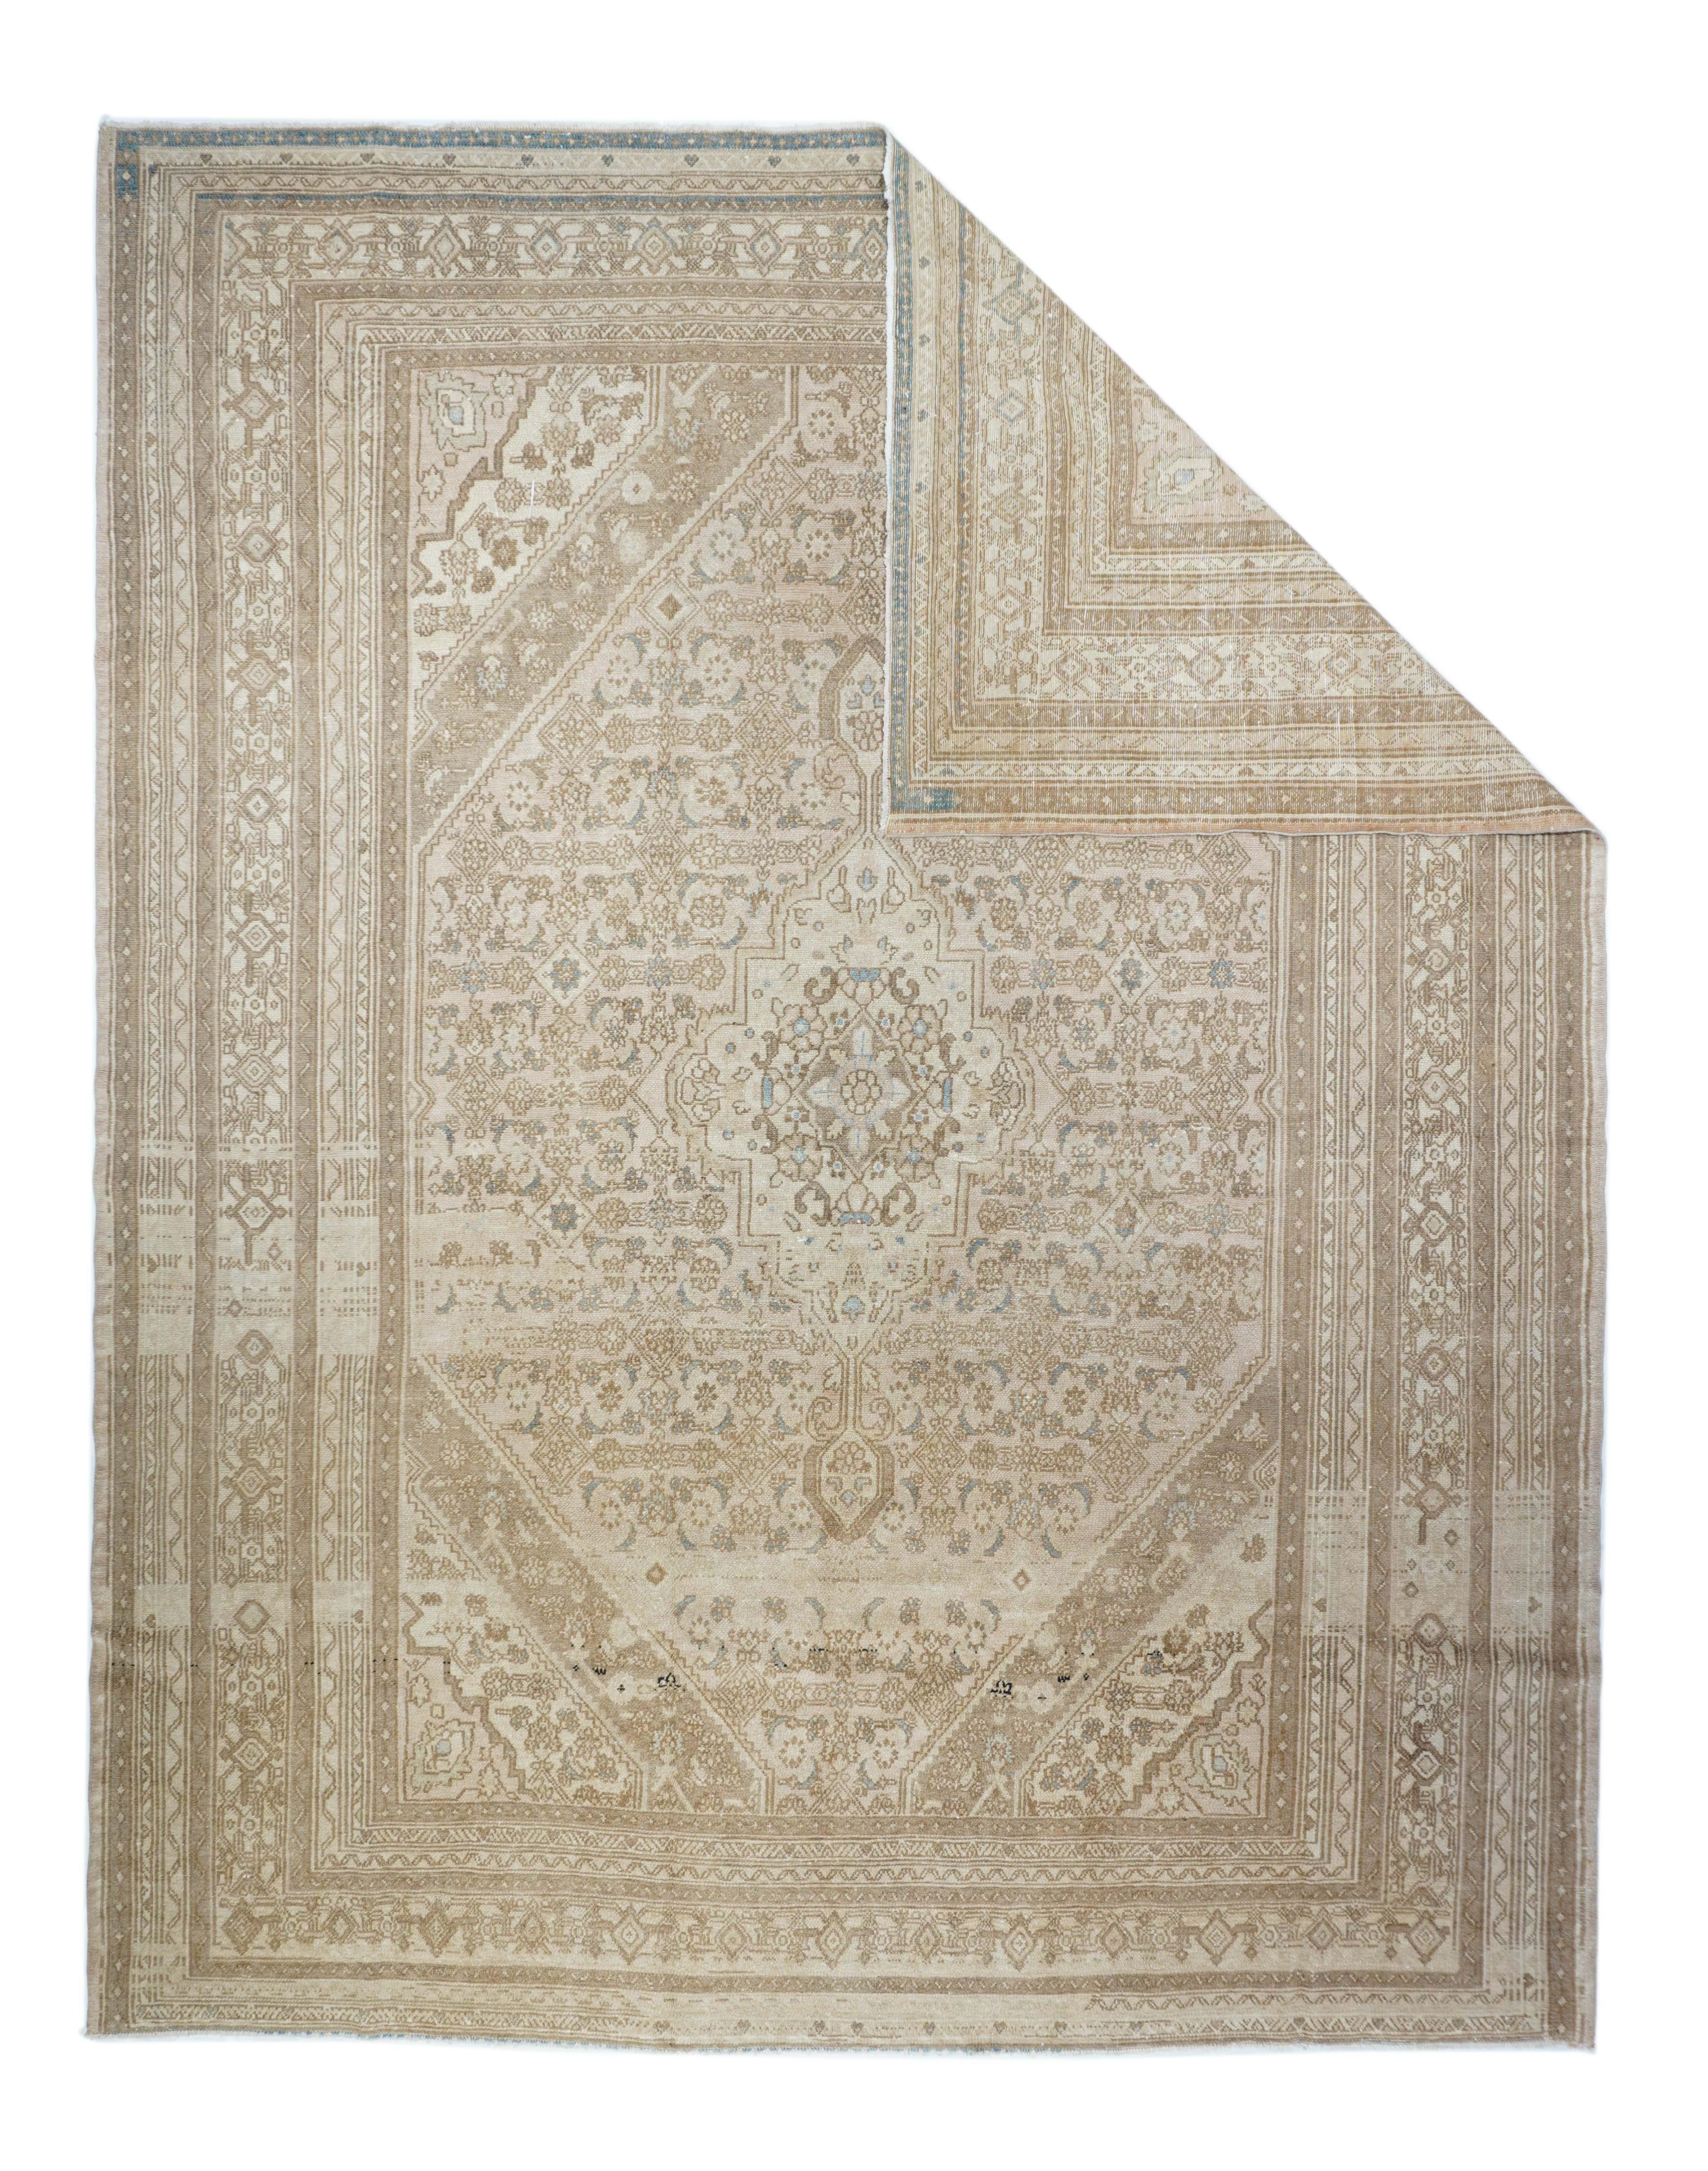 Vintage Malayer rug, measures 8'8'' x 11'2''.